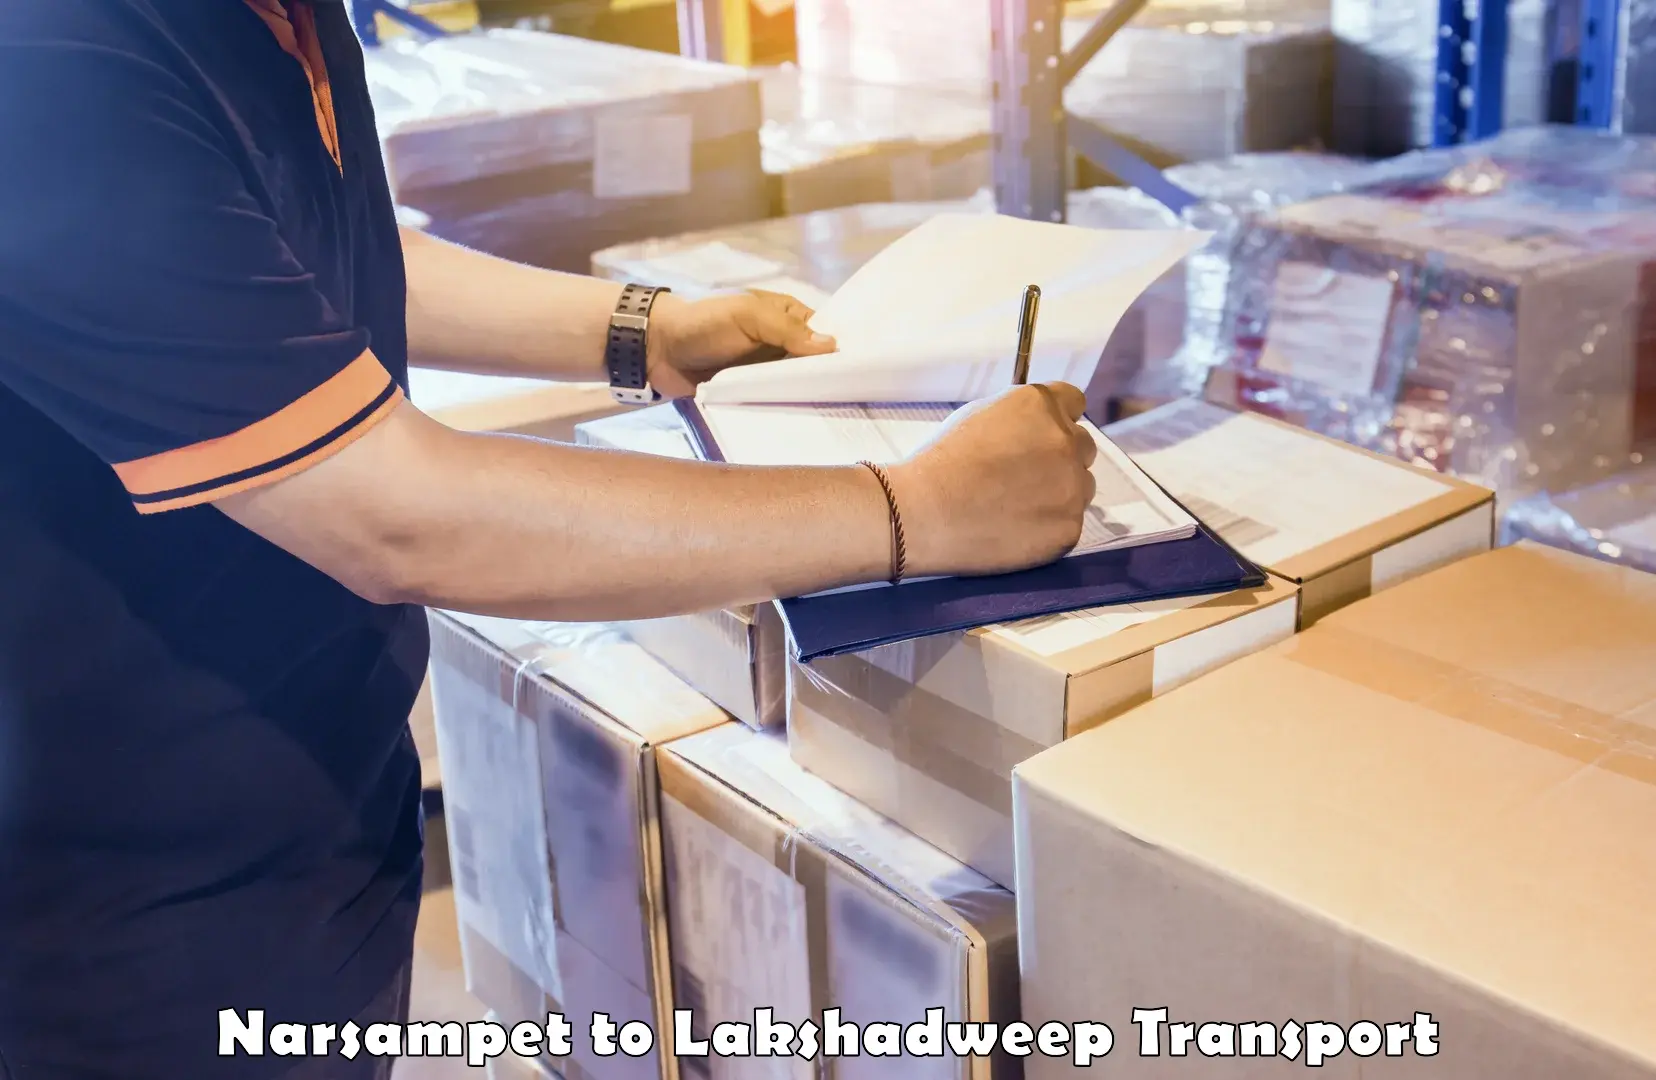 Pick up transport service Narsampet to Lakshadweep